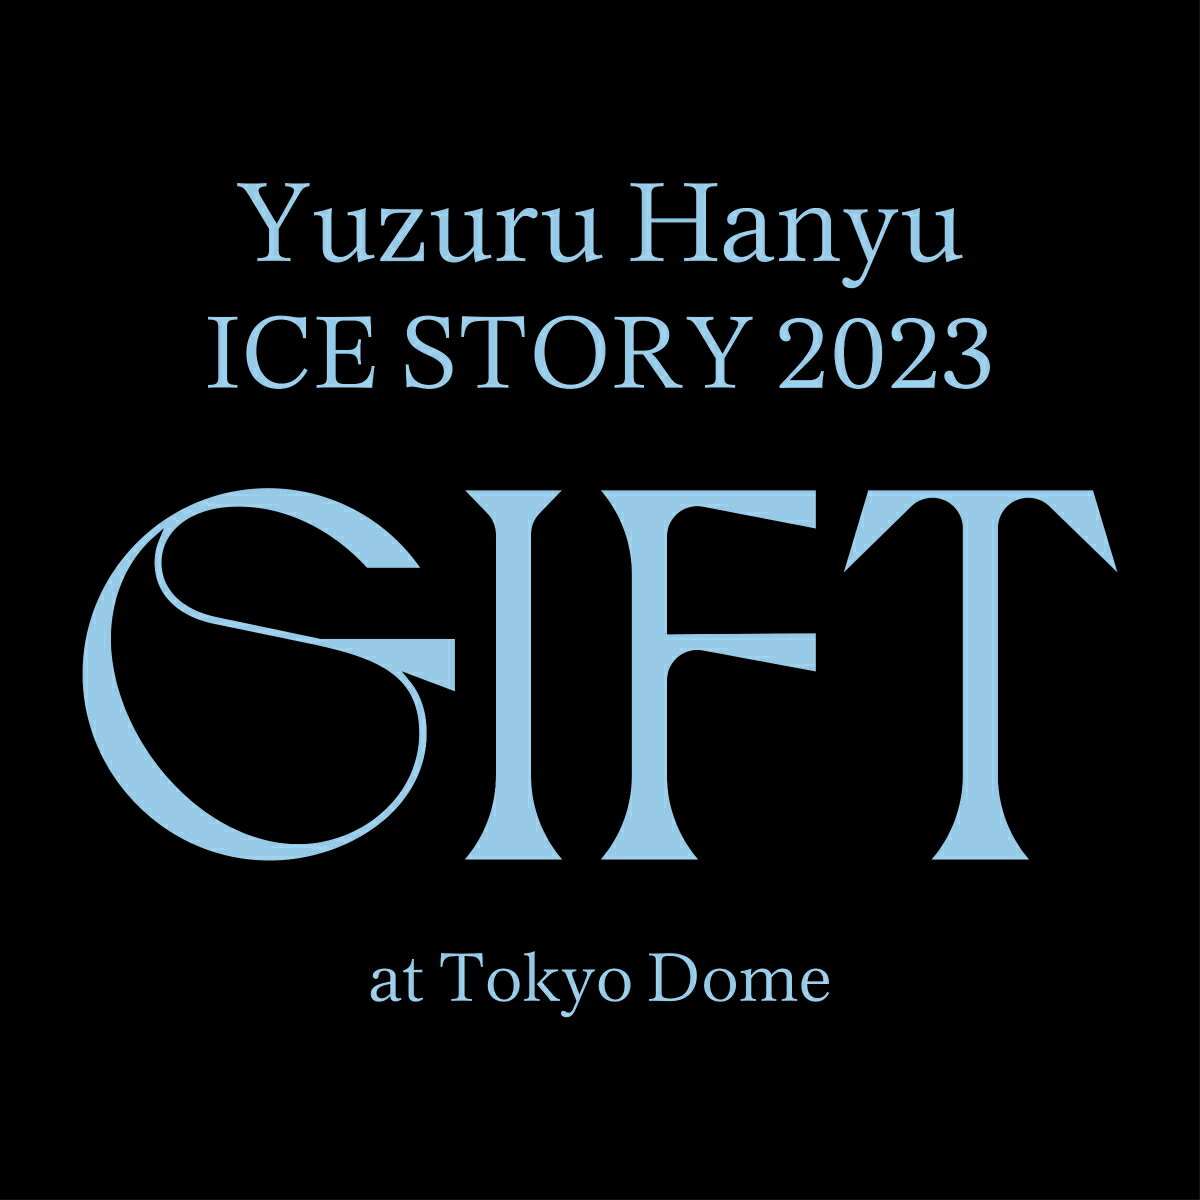 Yuzuru Hanyu ICE STORY 2023 “GIFT”at Tokyo Dome